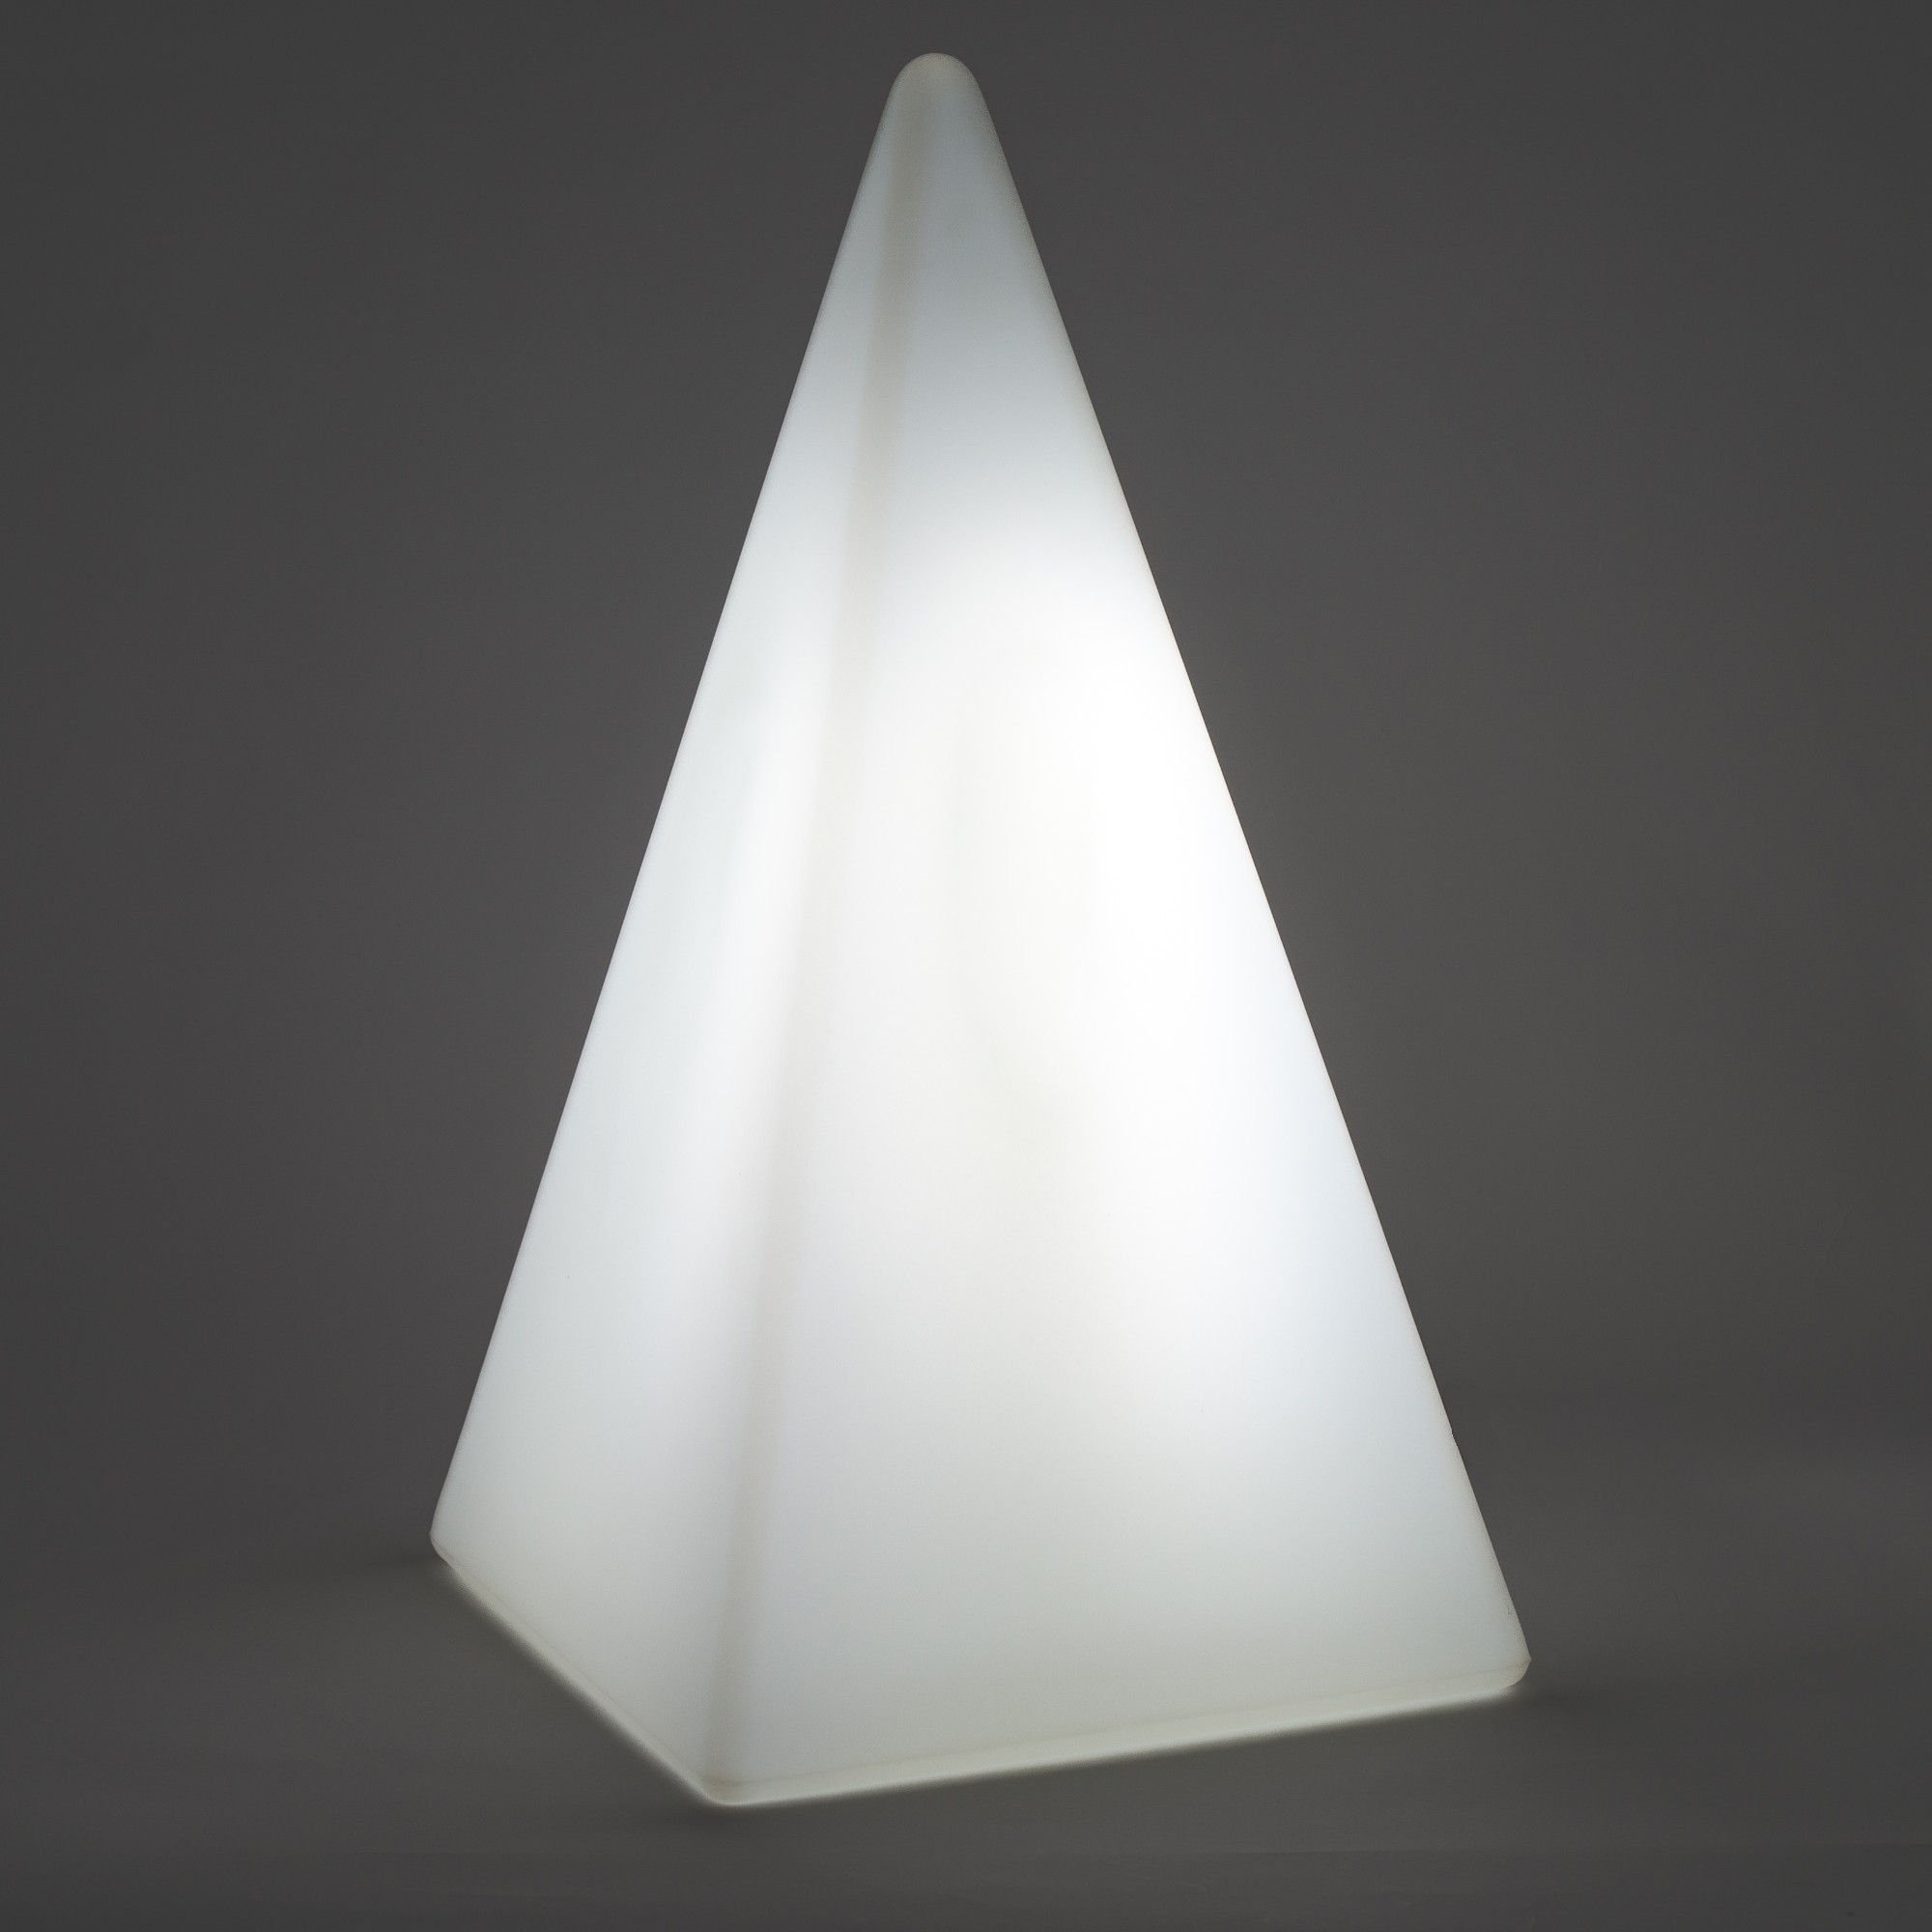 70202 Standleuchte Pyramide 54 cm der Firma EPSTEIN Design Leuchten